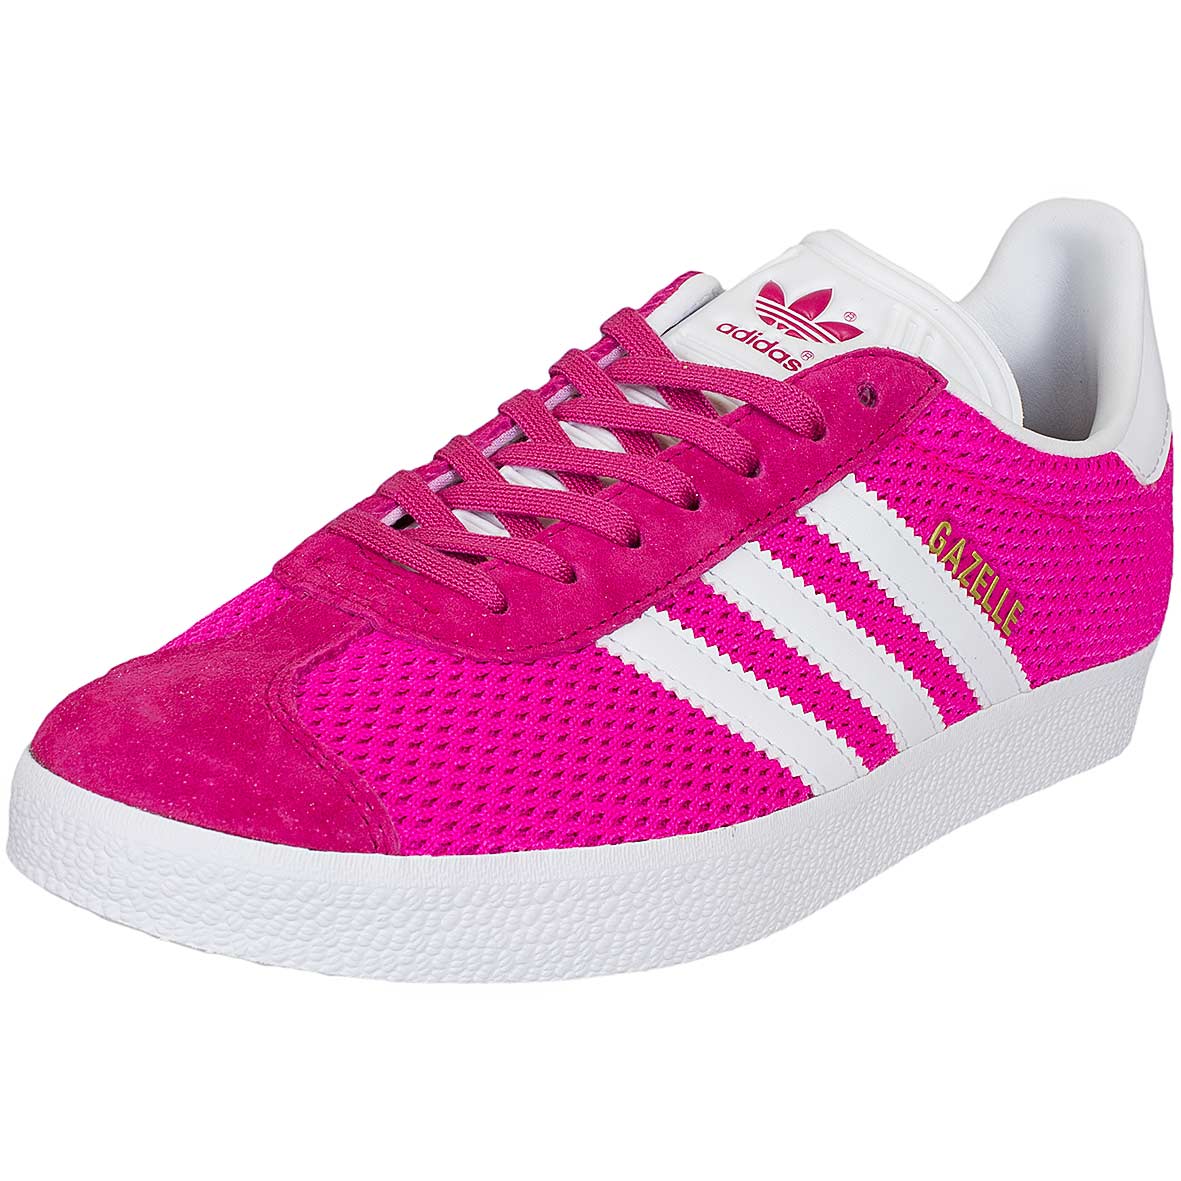 ☆ Adidas Originals Damen Sneaker Gazelle pink/weiß - hier bestellen!